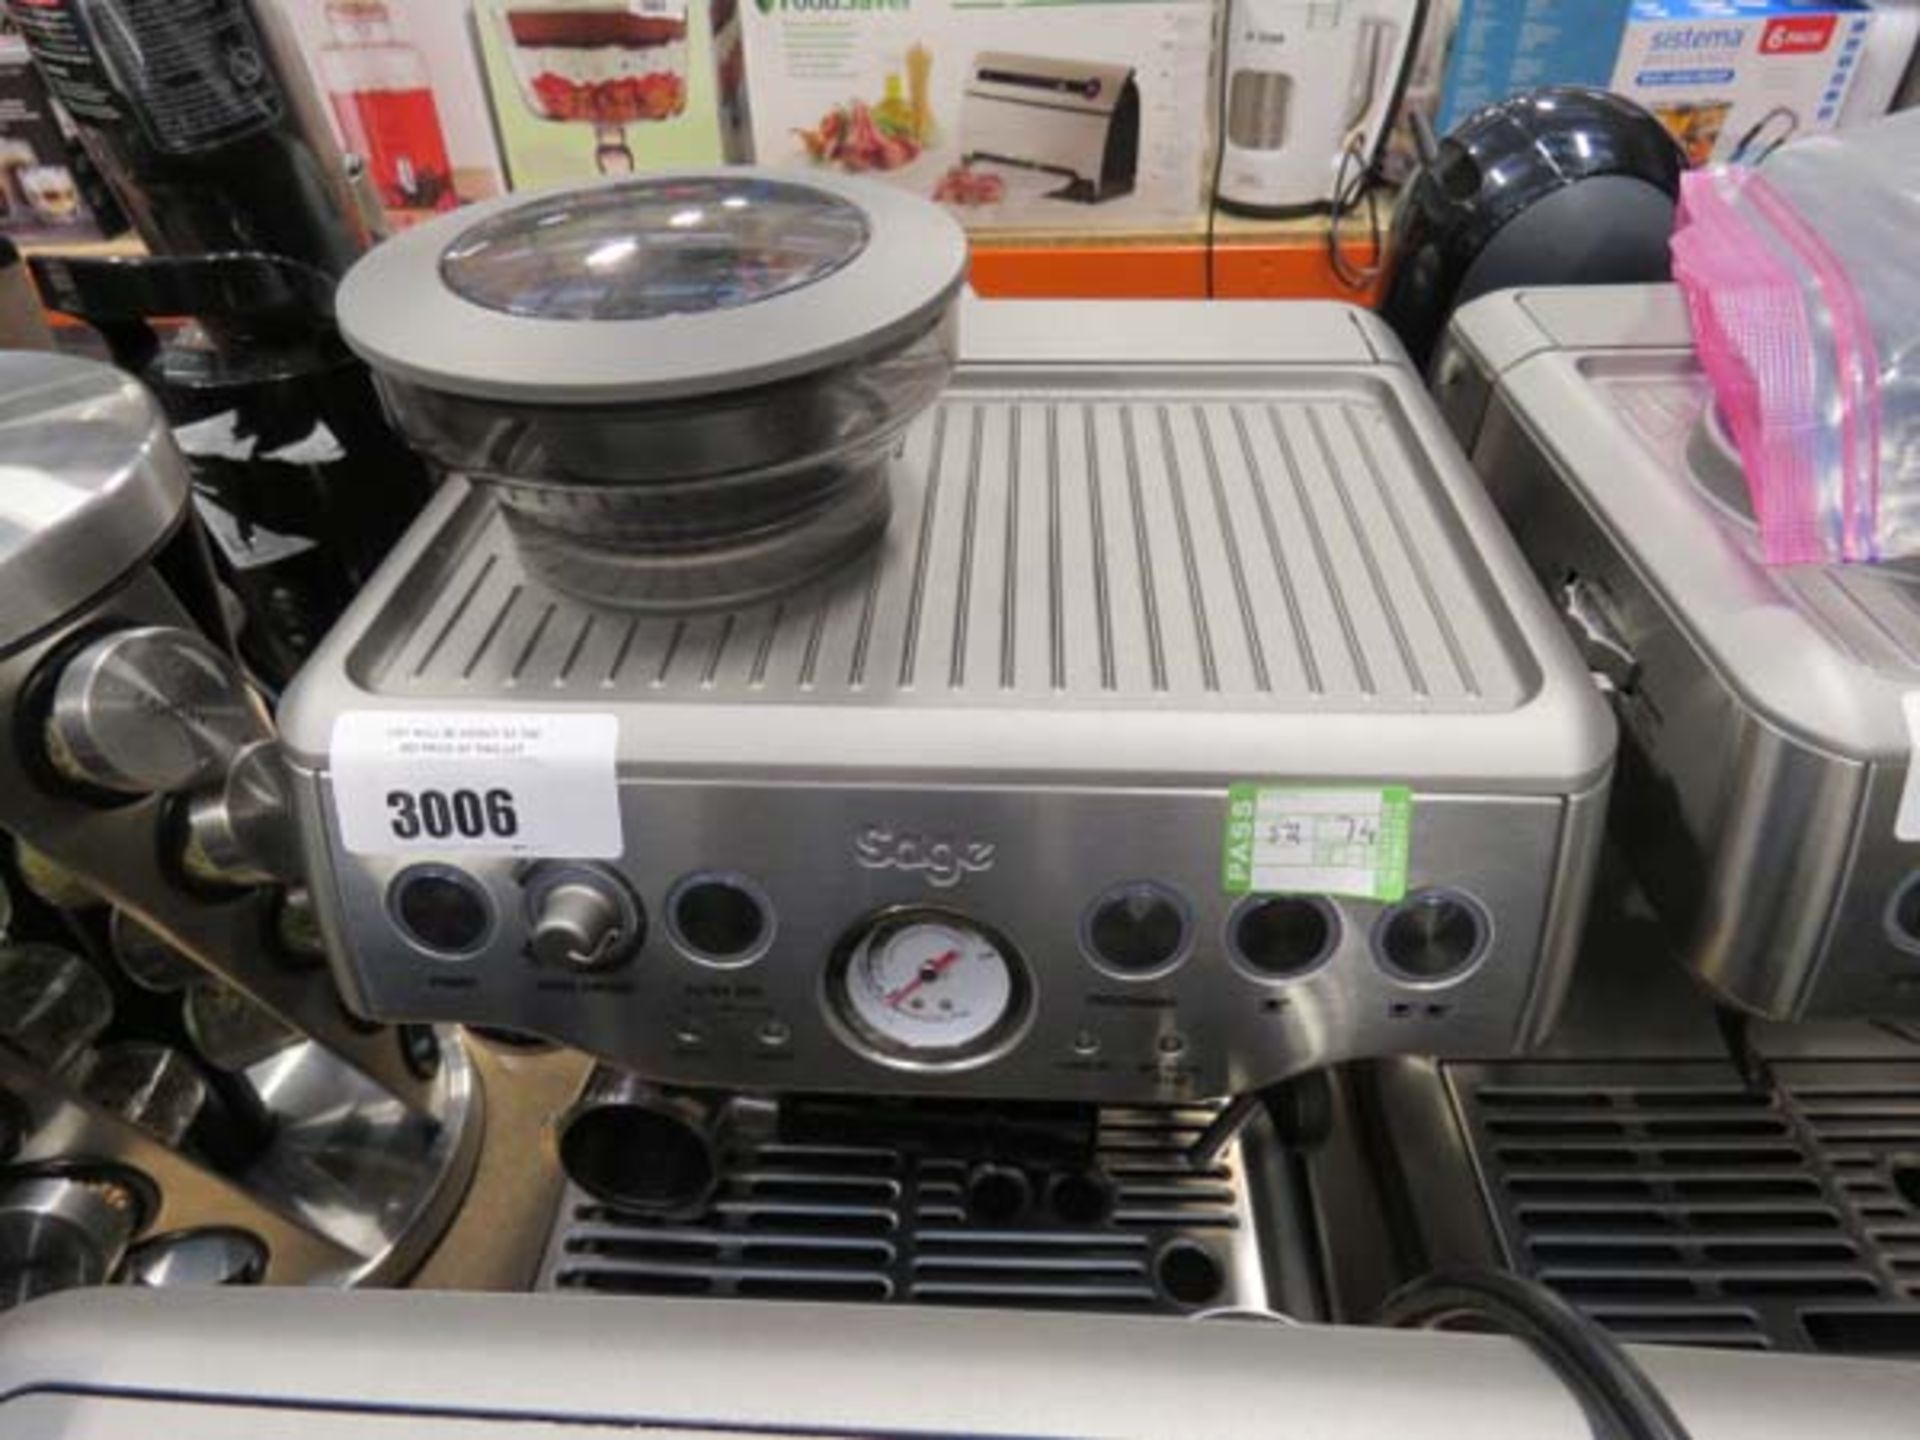 (TN74) Unboxed Sage Barista Express coffee machine